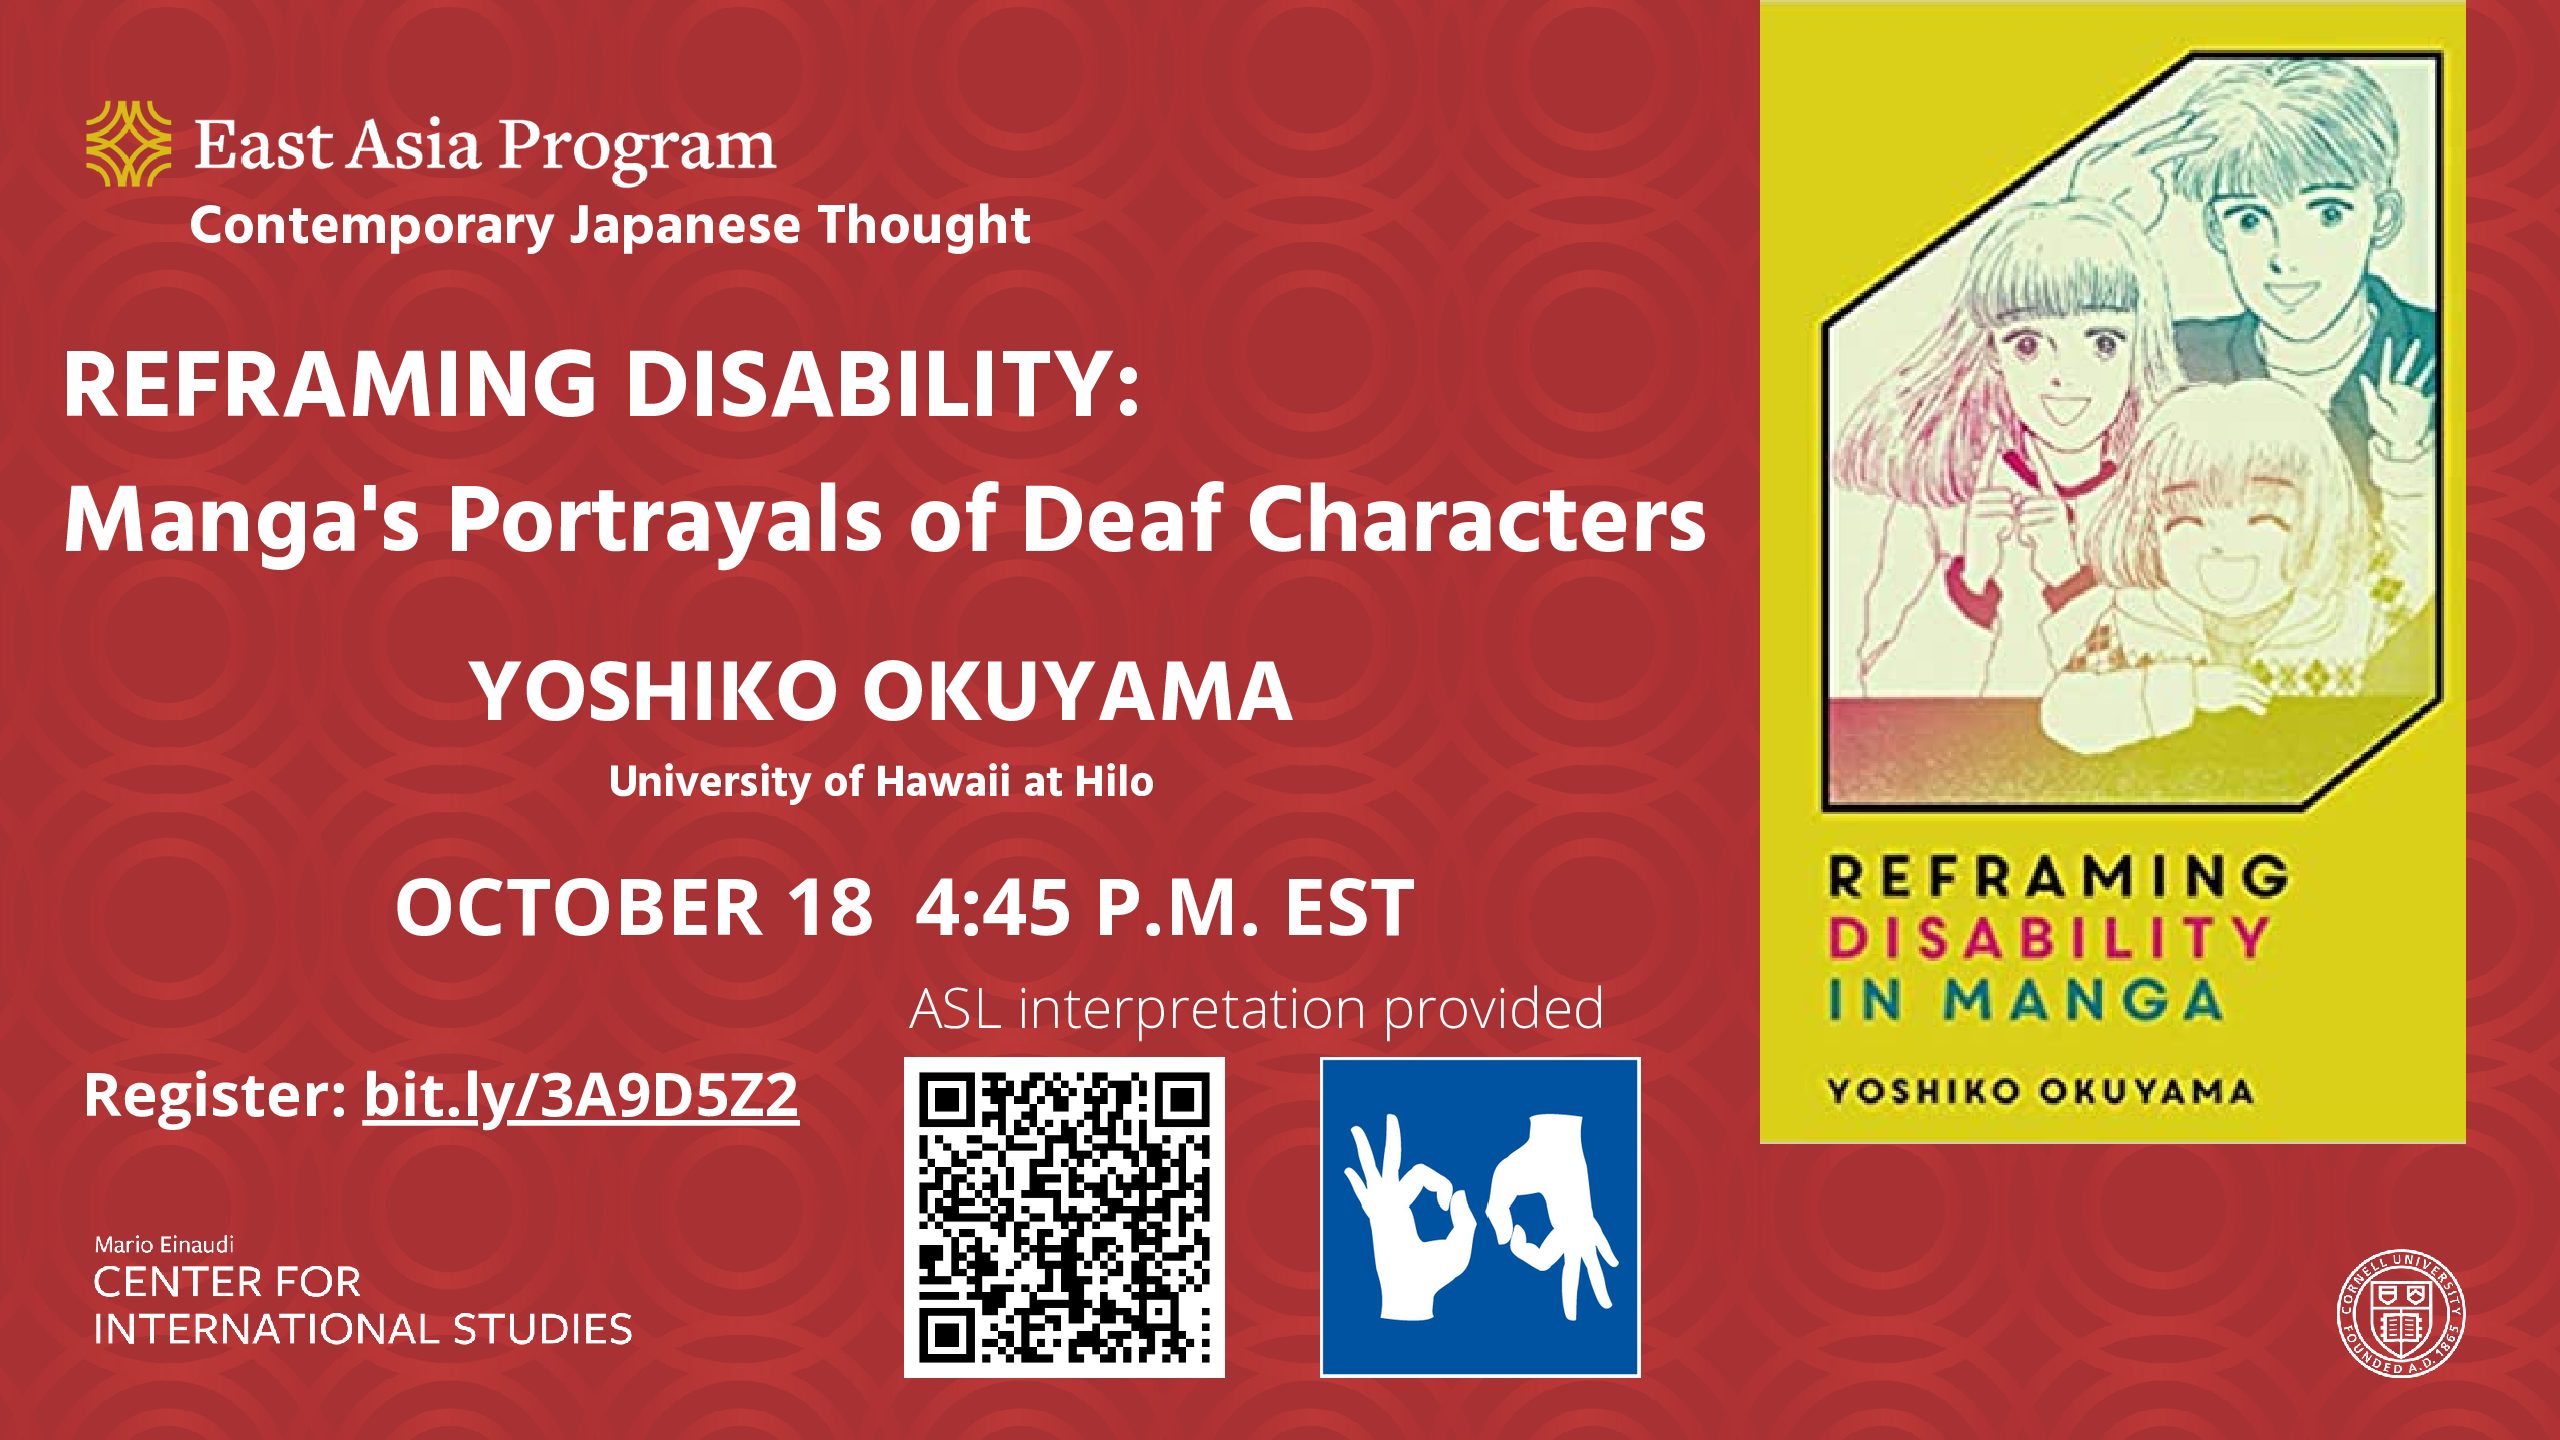 Reframing Disability Yoshiko Okuyama pdf